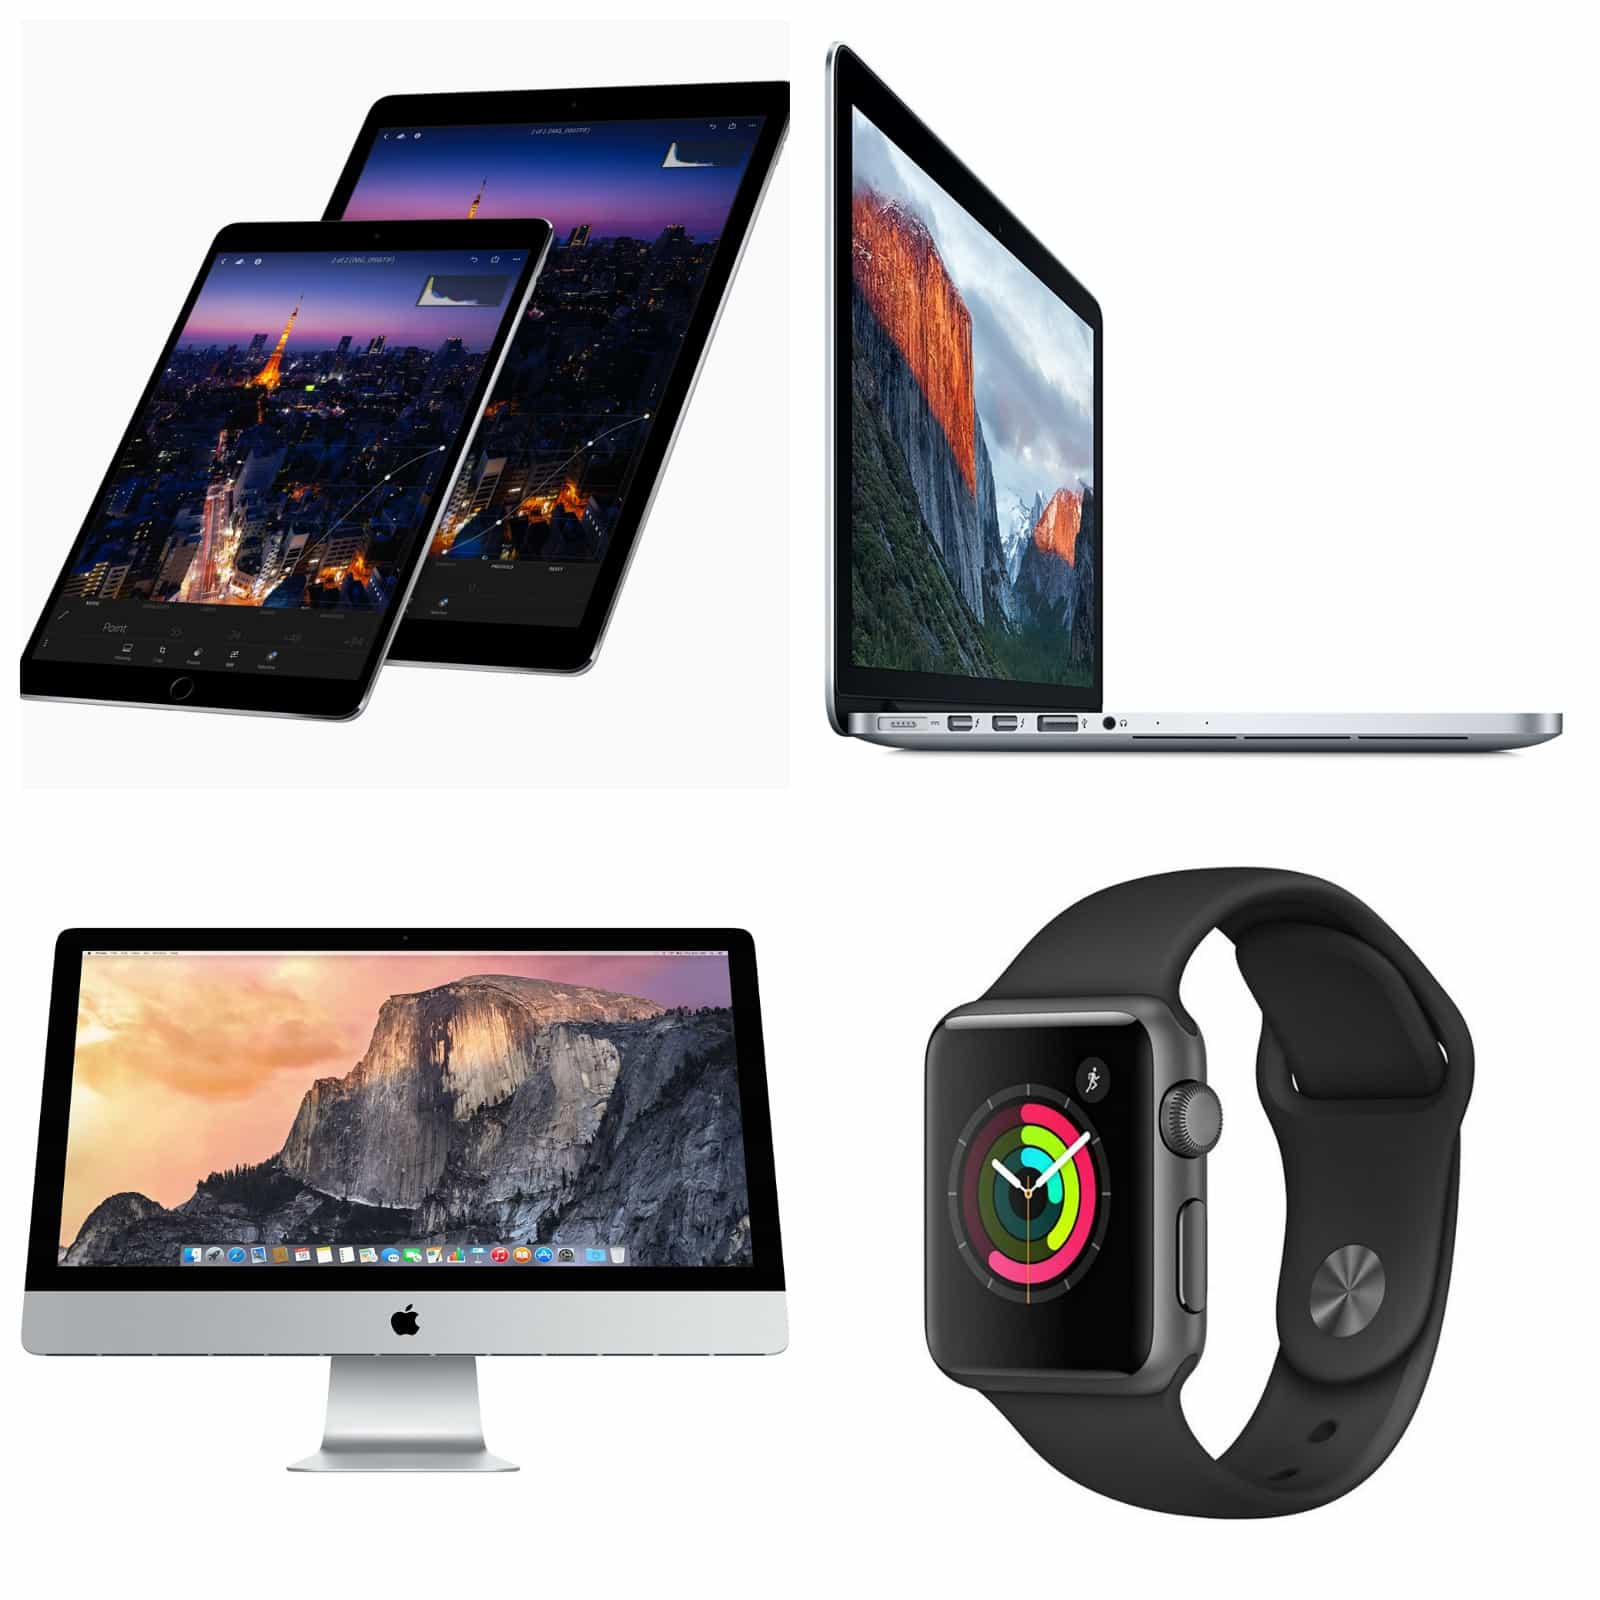 apple deals new ipad pro